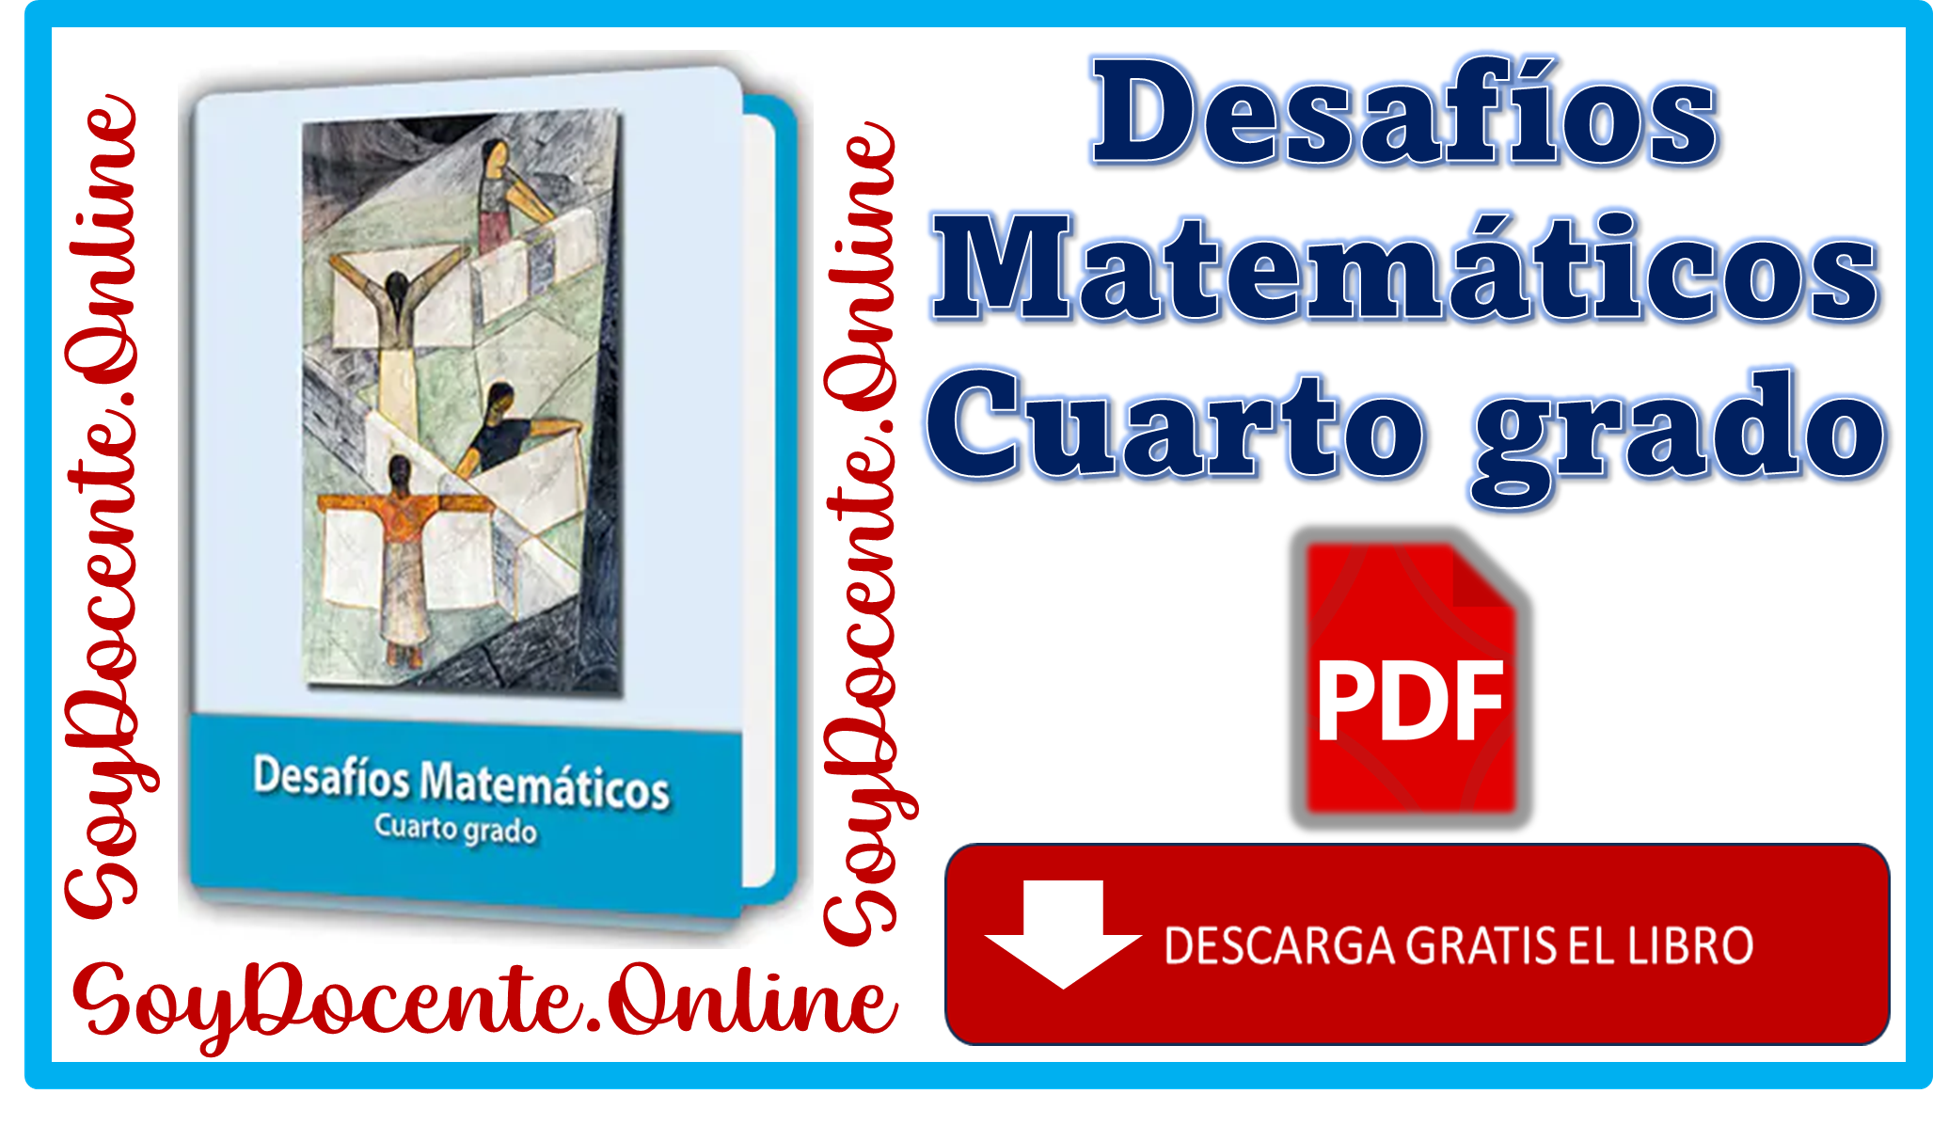 Descarga en PDF el Libro de Desafíos Matemáticos cuarto grado de Primaria, obra de la SEP, distribuido por CONALITEG.